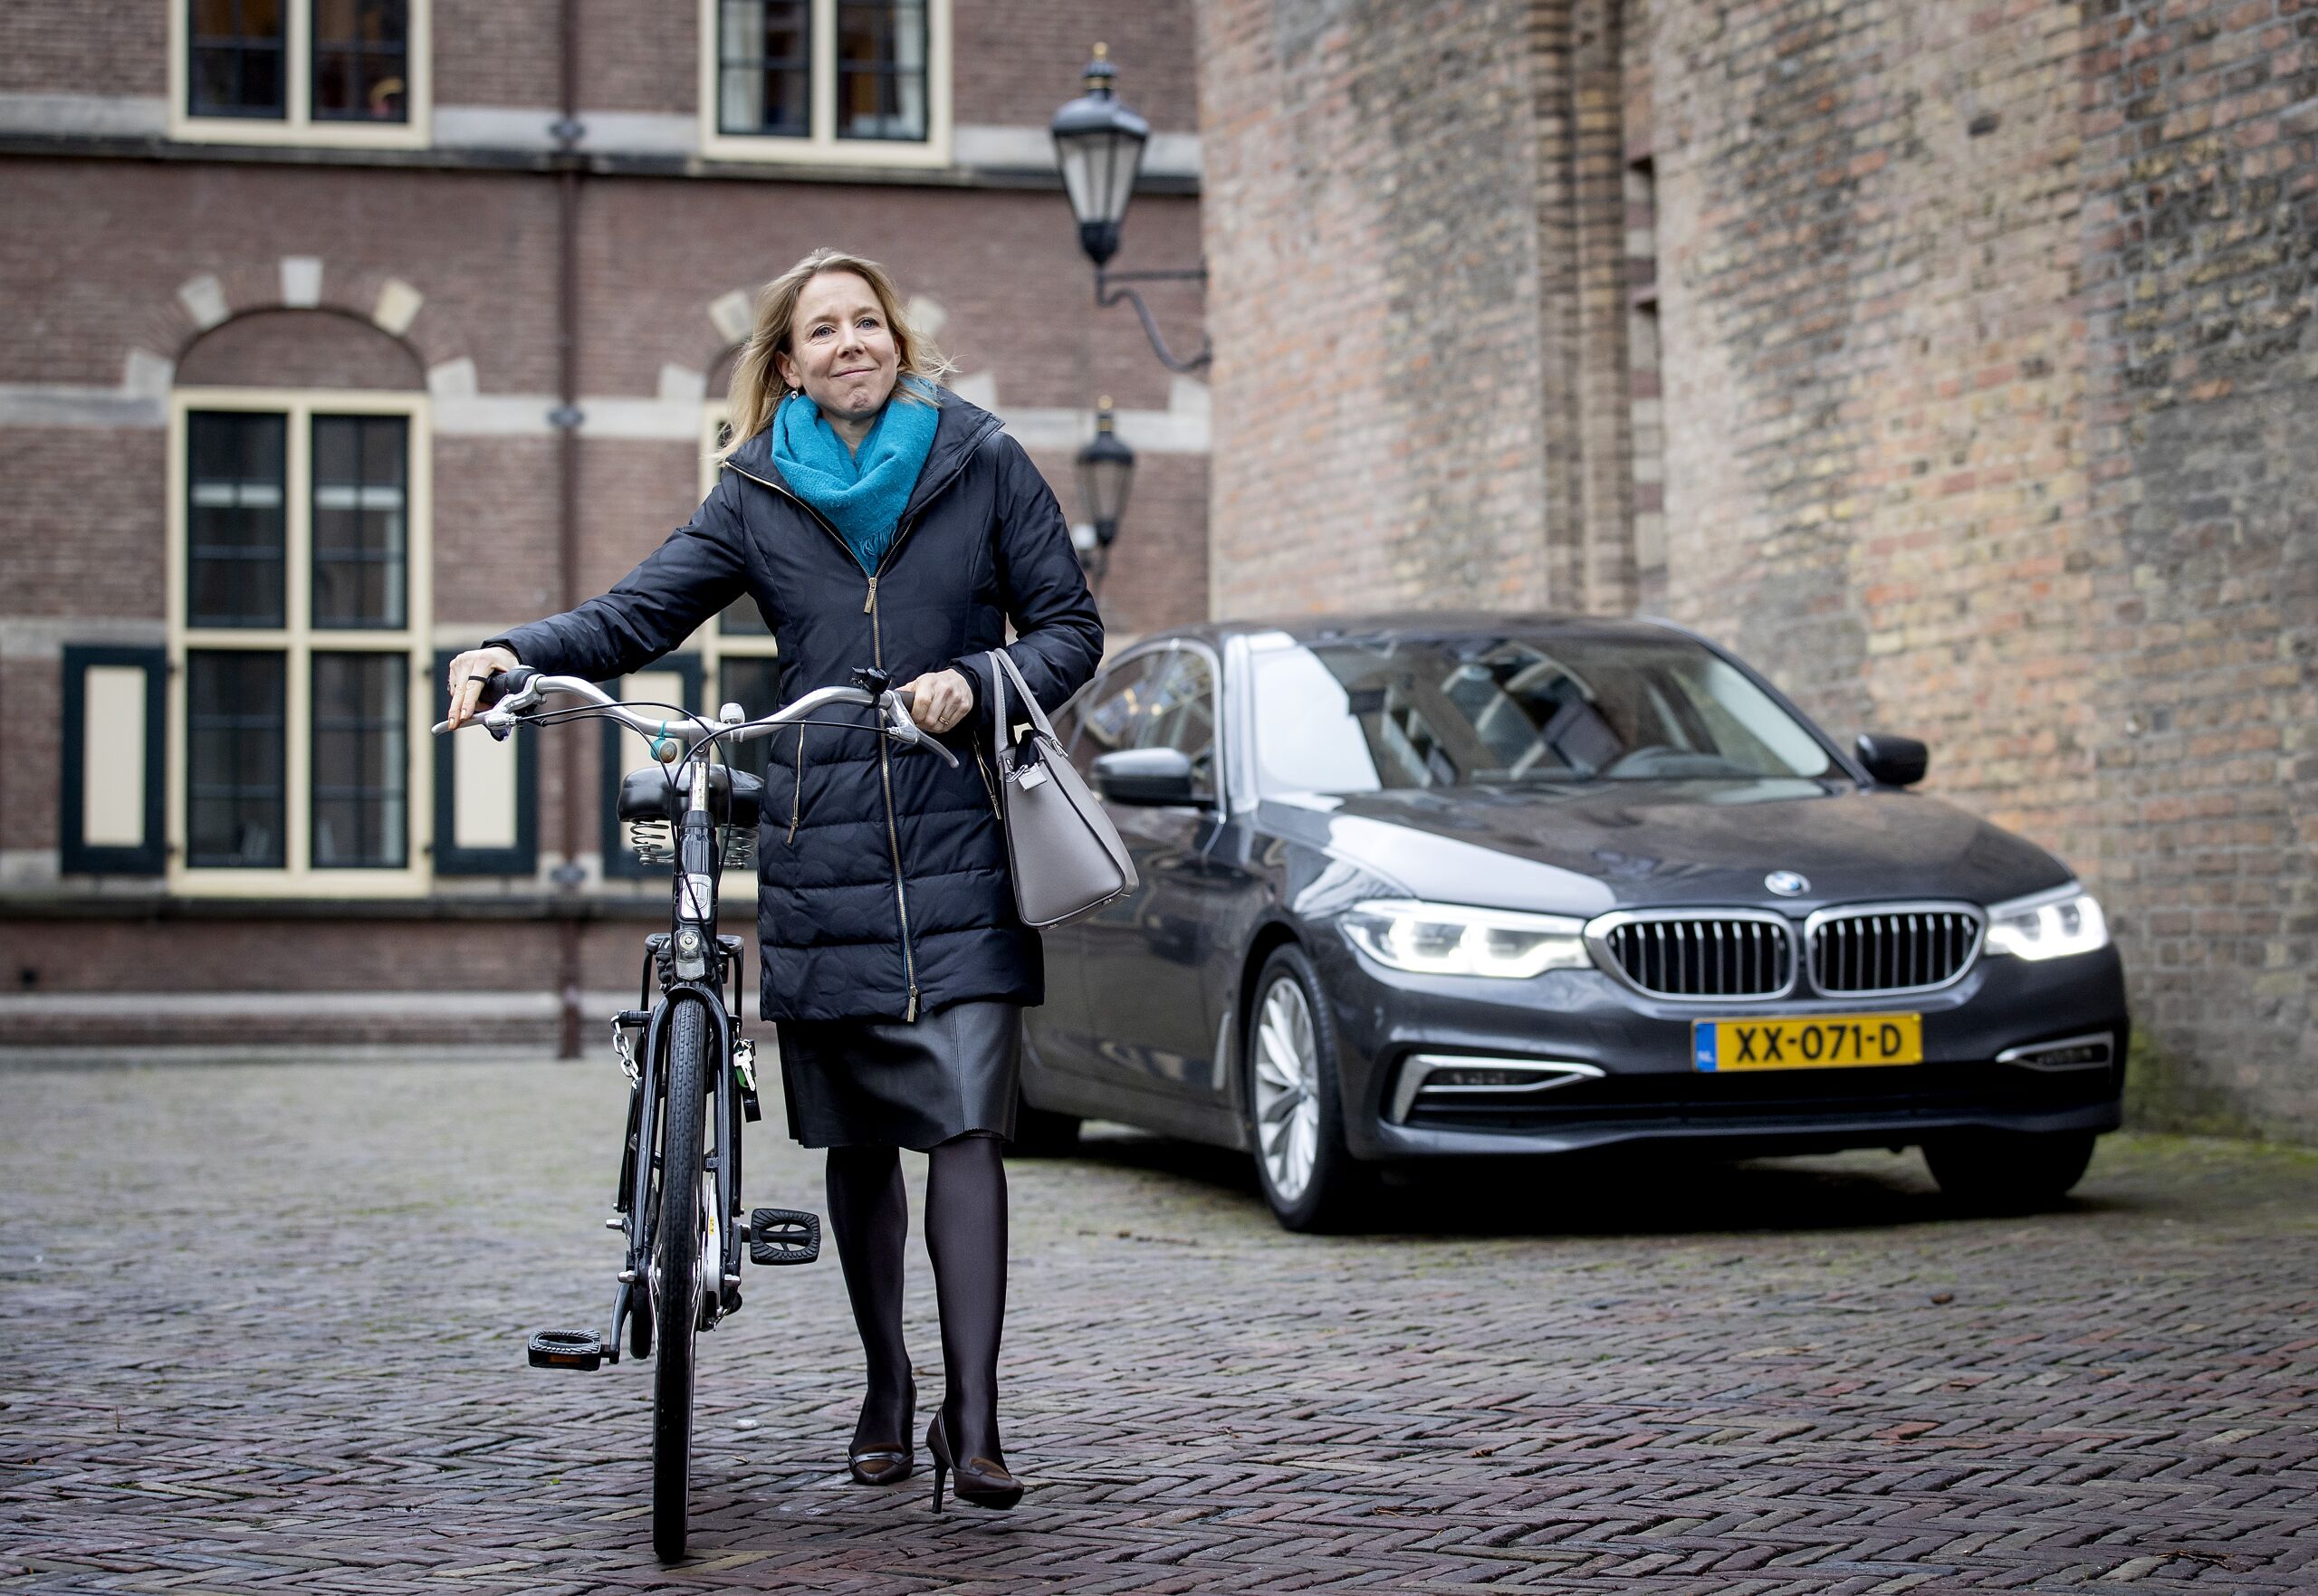 Stientje van Veldhoven, demissionair staatssecretaris van Infrastructuur en Waterstaat, met de fiets op het Binnehof